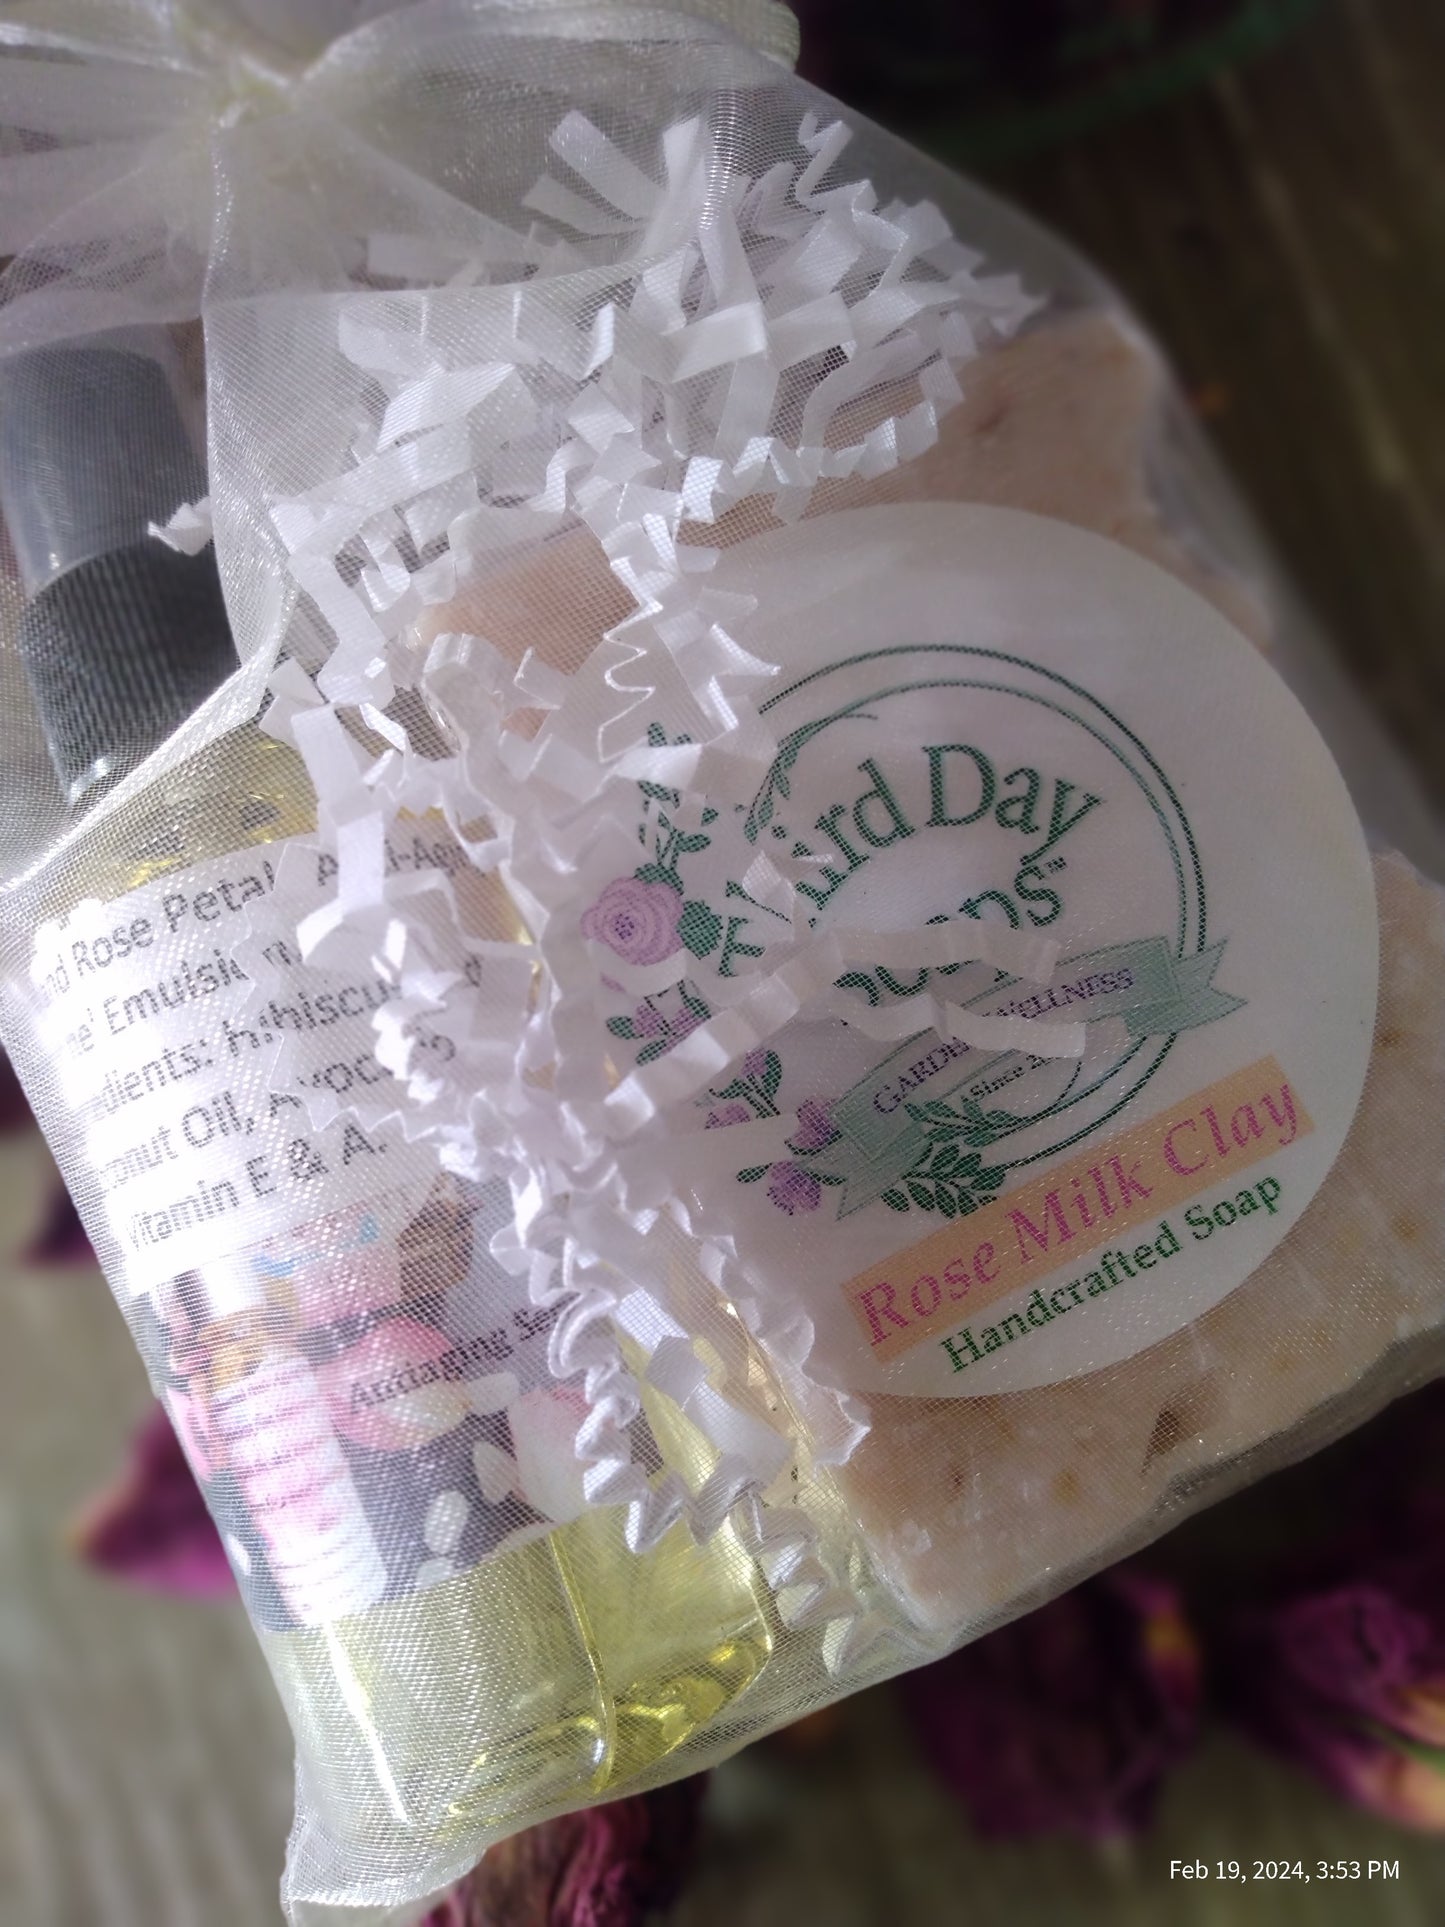 Rose' Blush Garden Handmade Soap and Body Oil moisturize set.